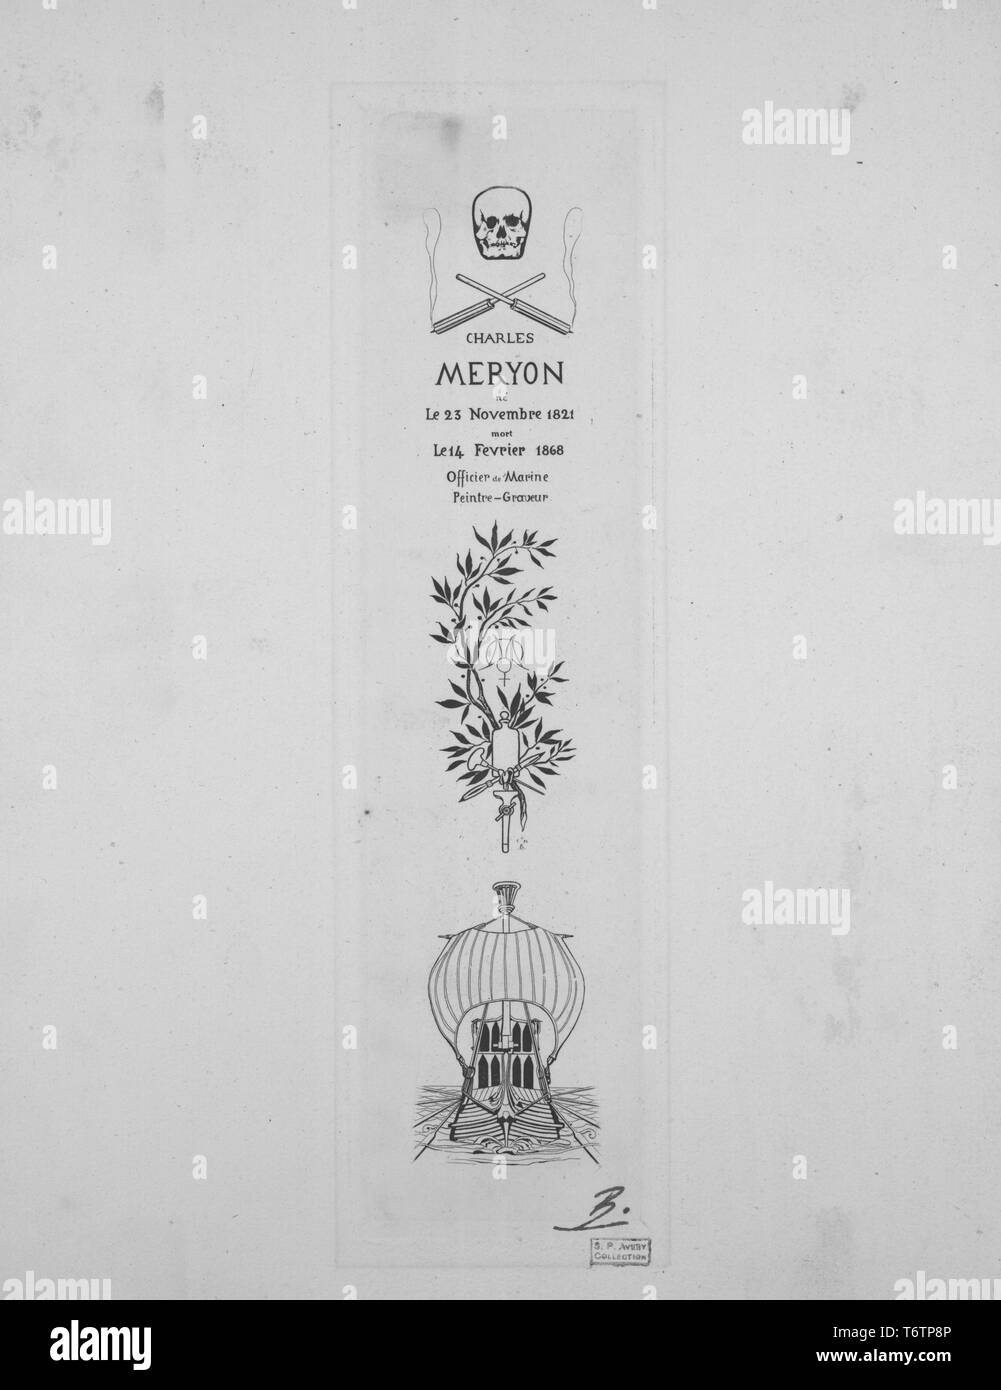 Gravure noir et blanc représentant une plaque pour le tombeau de collègues français Artiste, Charles Meryon, dans un format vertical, avec un crâne et traversé les outils de gravure (éventuellement une echoppe ou cônes d'abeille), un texte, et un élément foliée bow-Vue de face d'un grand voilier ; titre de la plaque "tombeau de Meryon" (plaque de la tombe de Meryon) ; coté et paraphé, par l'illustrateur Félix Bracquemond, 1867. À partir de la Bibliothèque publique de New York. () Banque D'Images